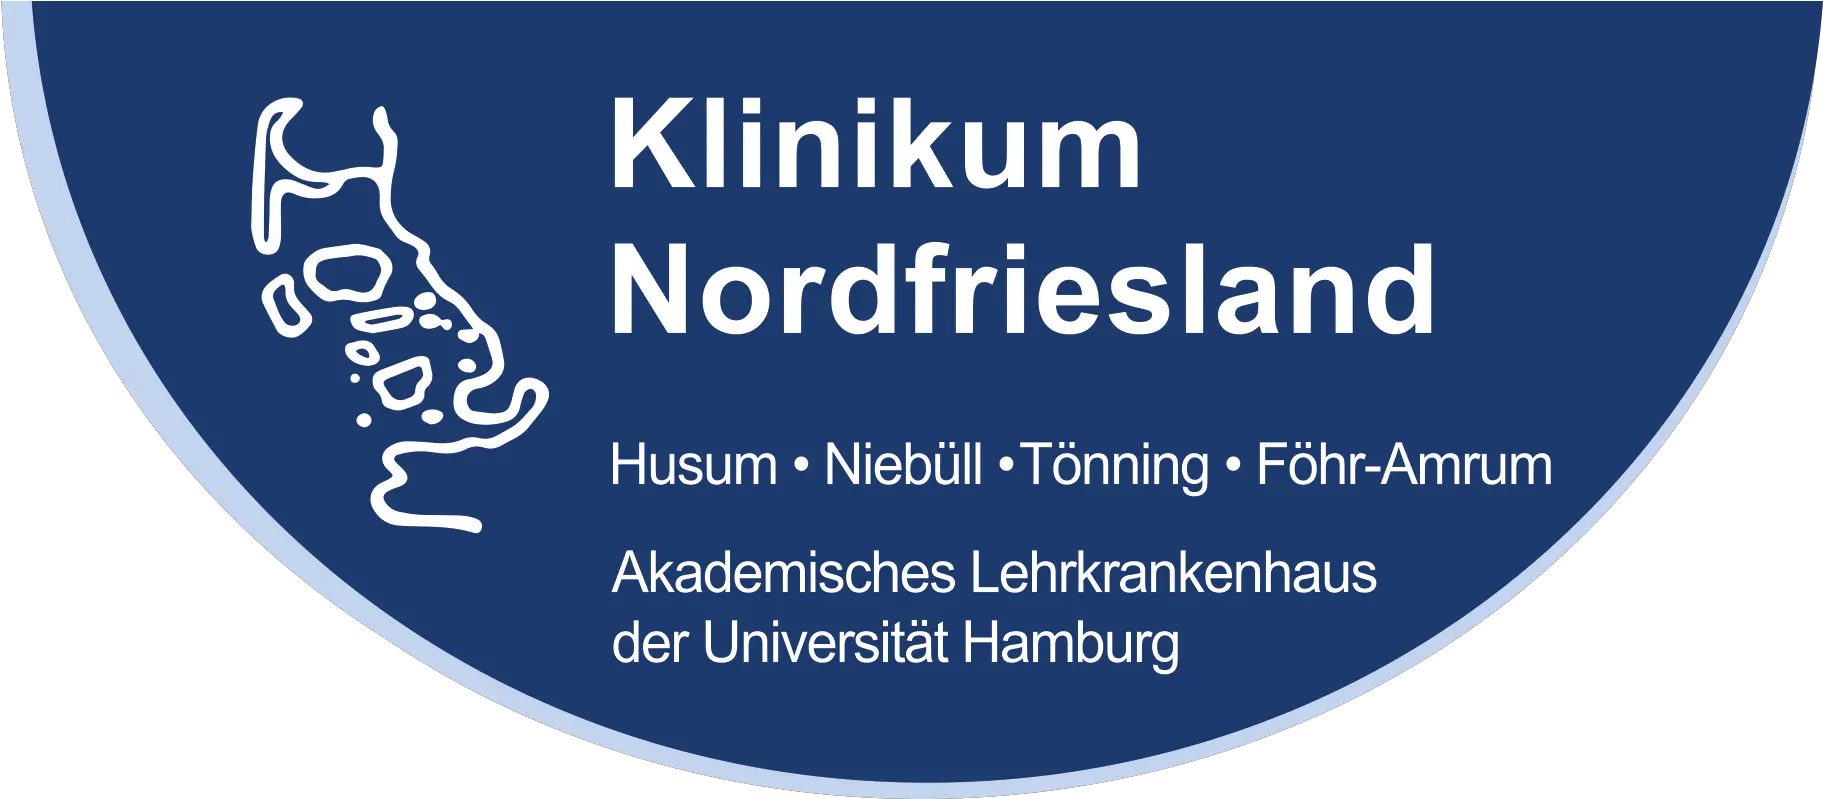 Filelogo Klinikum Blau Kurz Rgbpng Wikimedia Commons Klinikum Nordfriesland Nf Logo